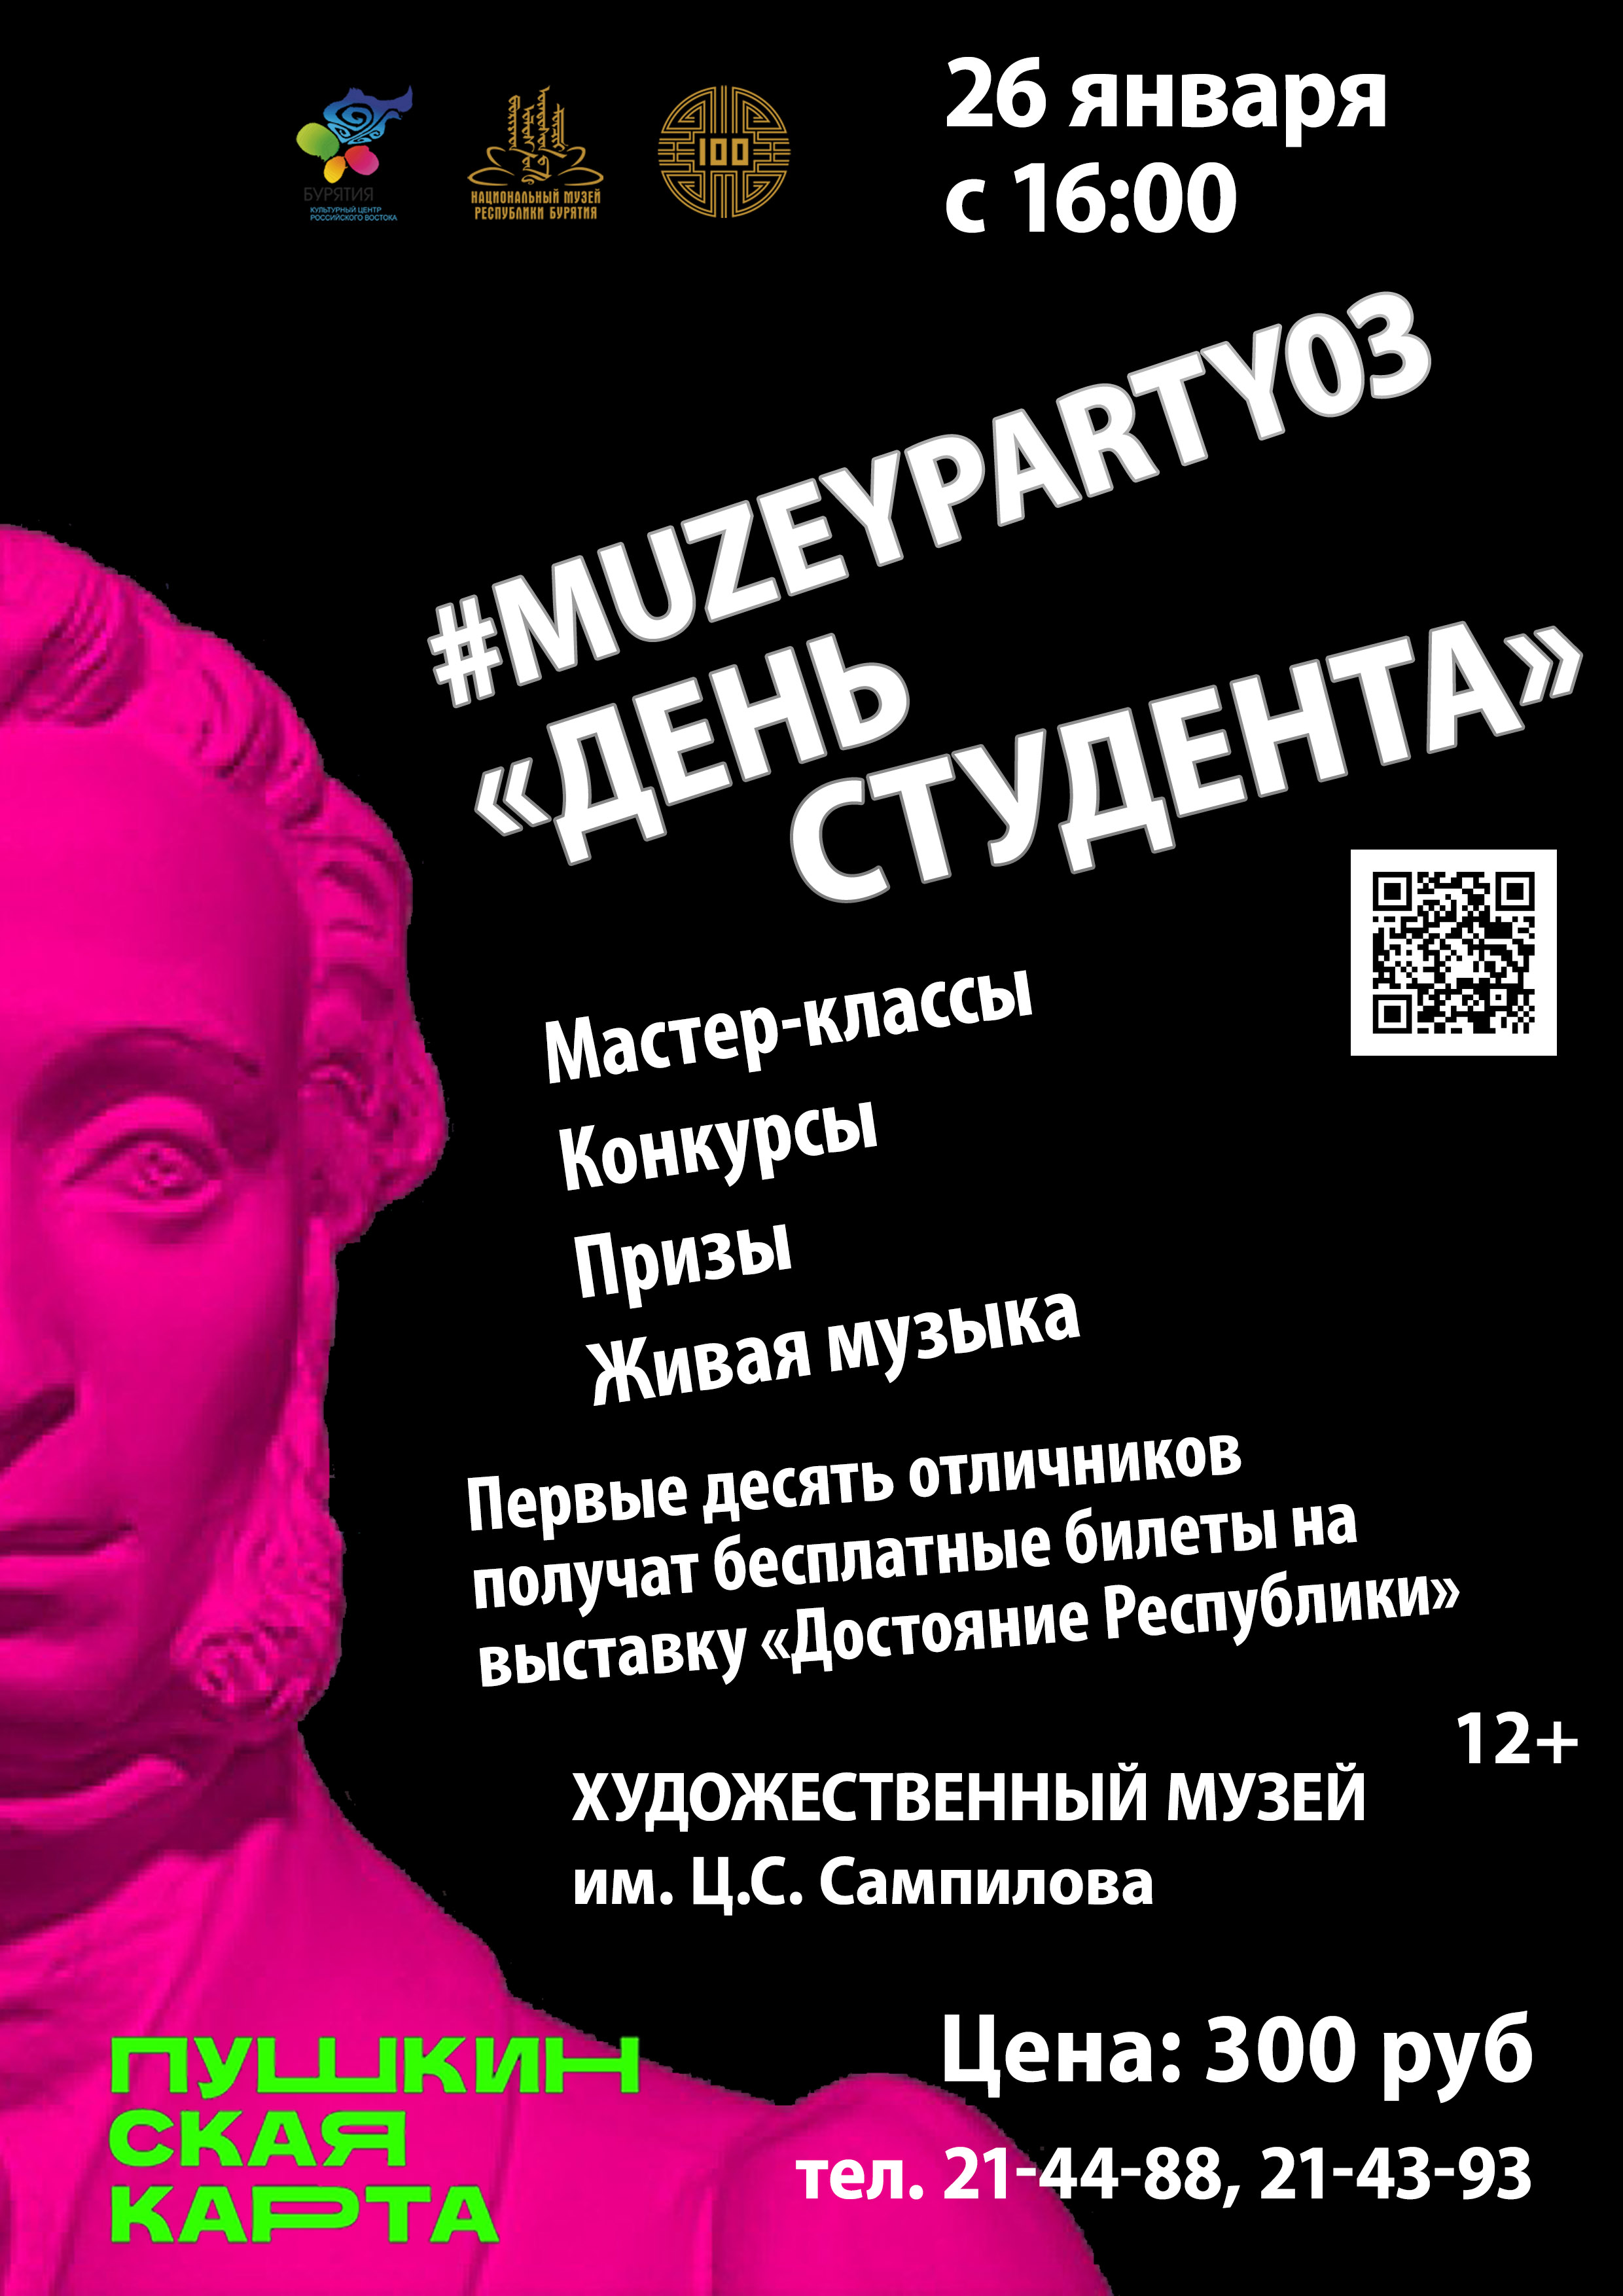 Muzeyparty03 "День студента" состоится 26 января